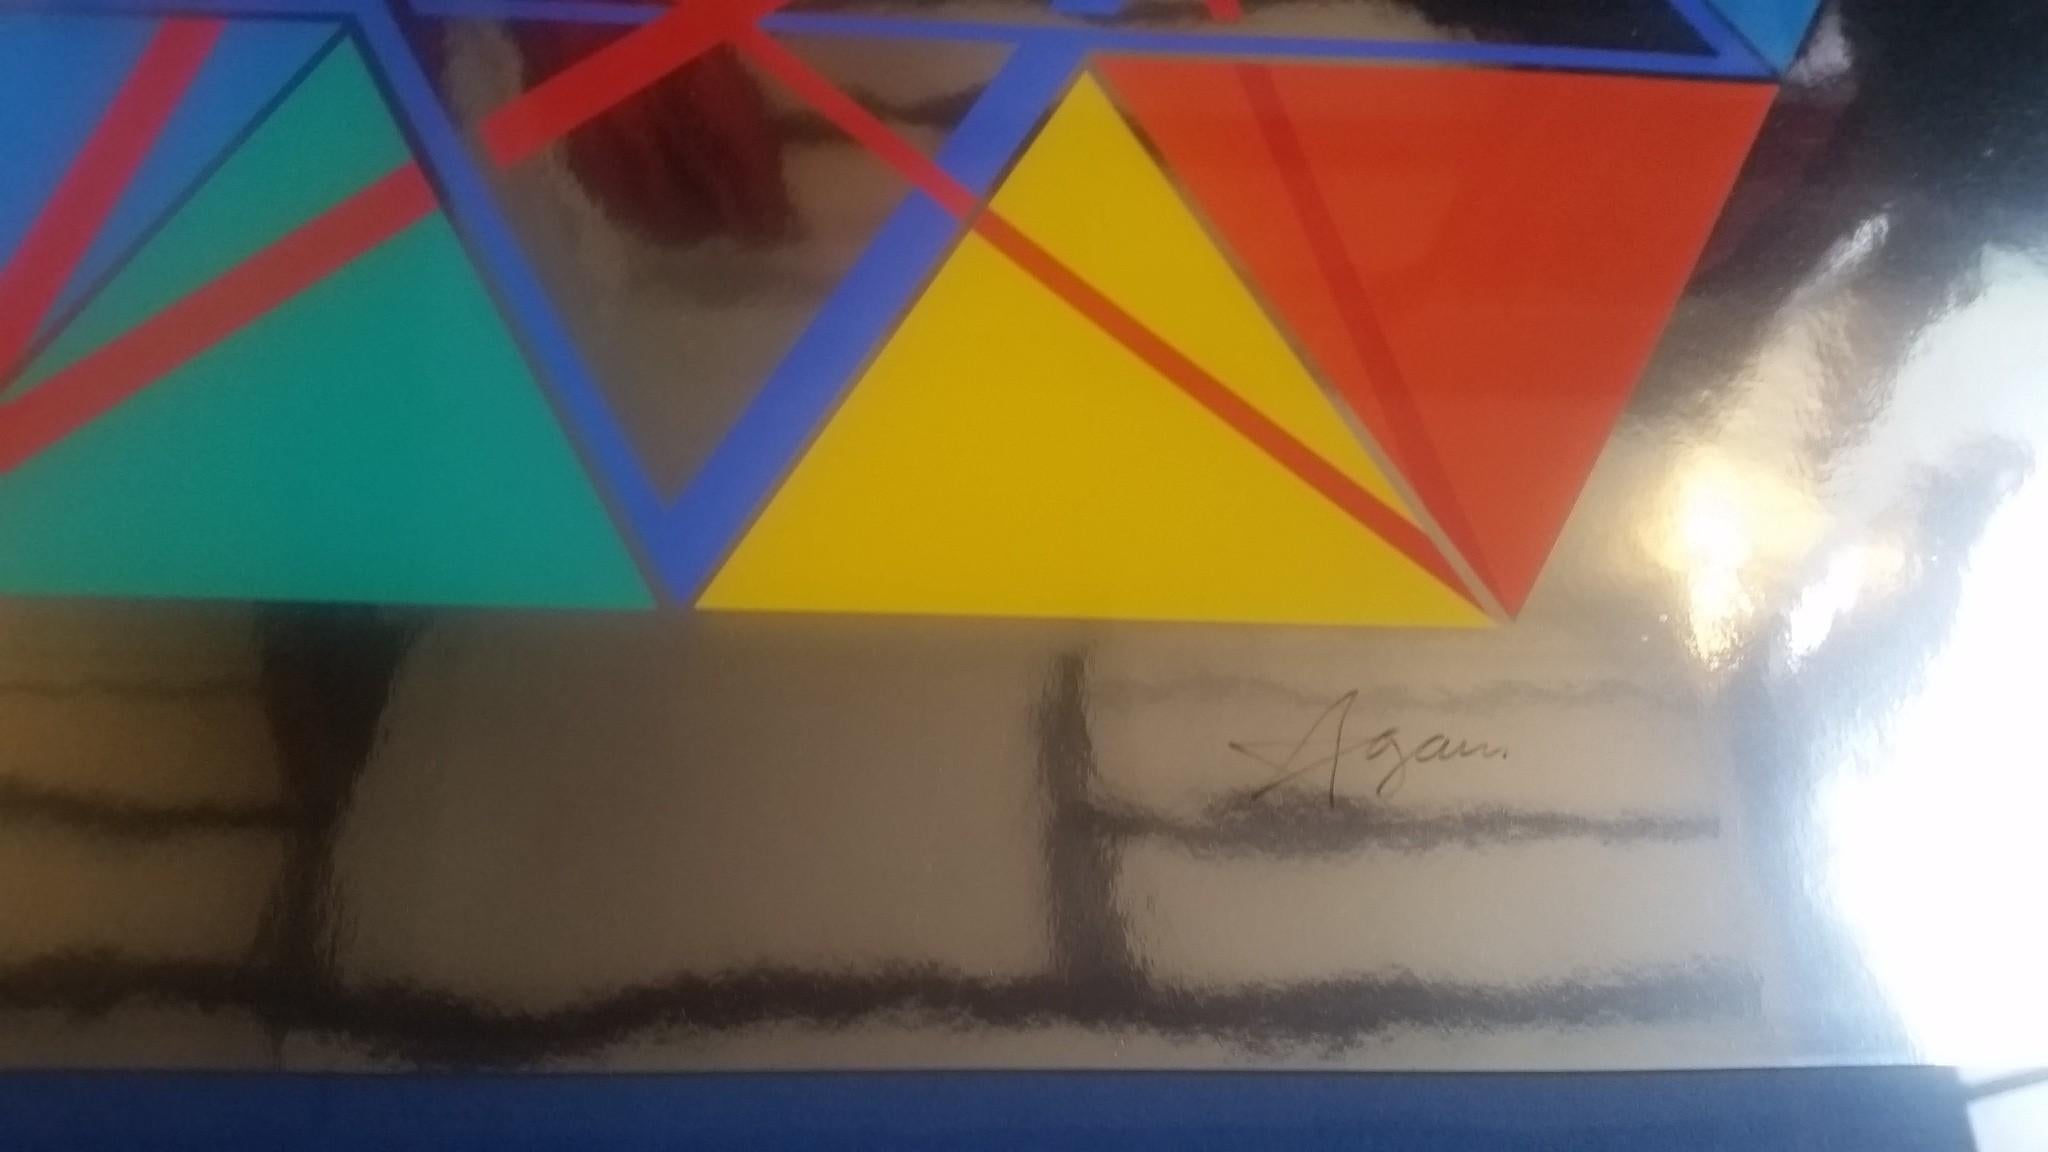 Yaacov Agam - Étoile de David - Illusionnisme abstrait, 1979, sérigraphie signée
Signé et numéroté par l'artiste édition 223 / 250
Avec cadre
Taille de l'œuvre : 60 x 53 cm
Dimensions avec cadre : 75 x 69 x 3,5 cm
Prix : 1400€ pour ce travail